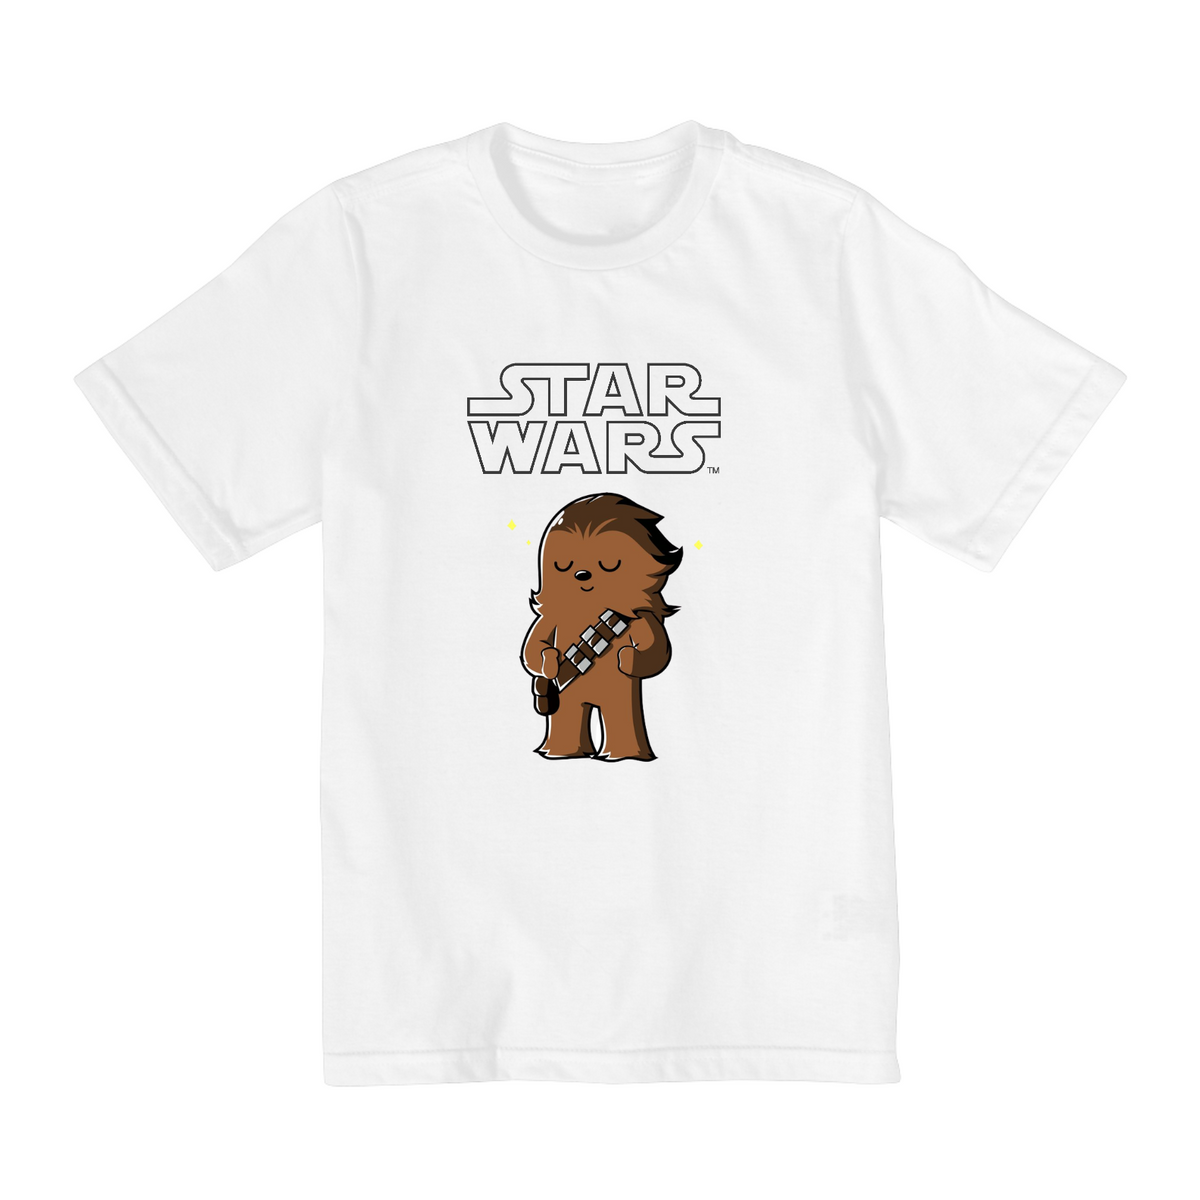 Nome do produto: Coleção Star Wars - Camiseta infantil 02 a 08 anos - Chewbacca 